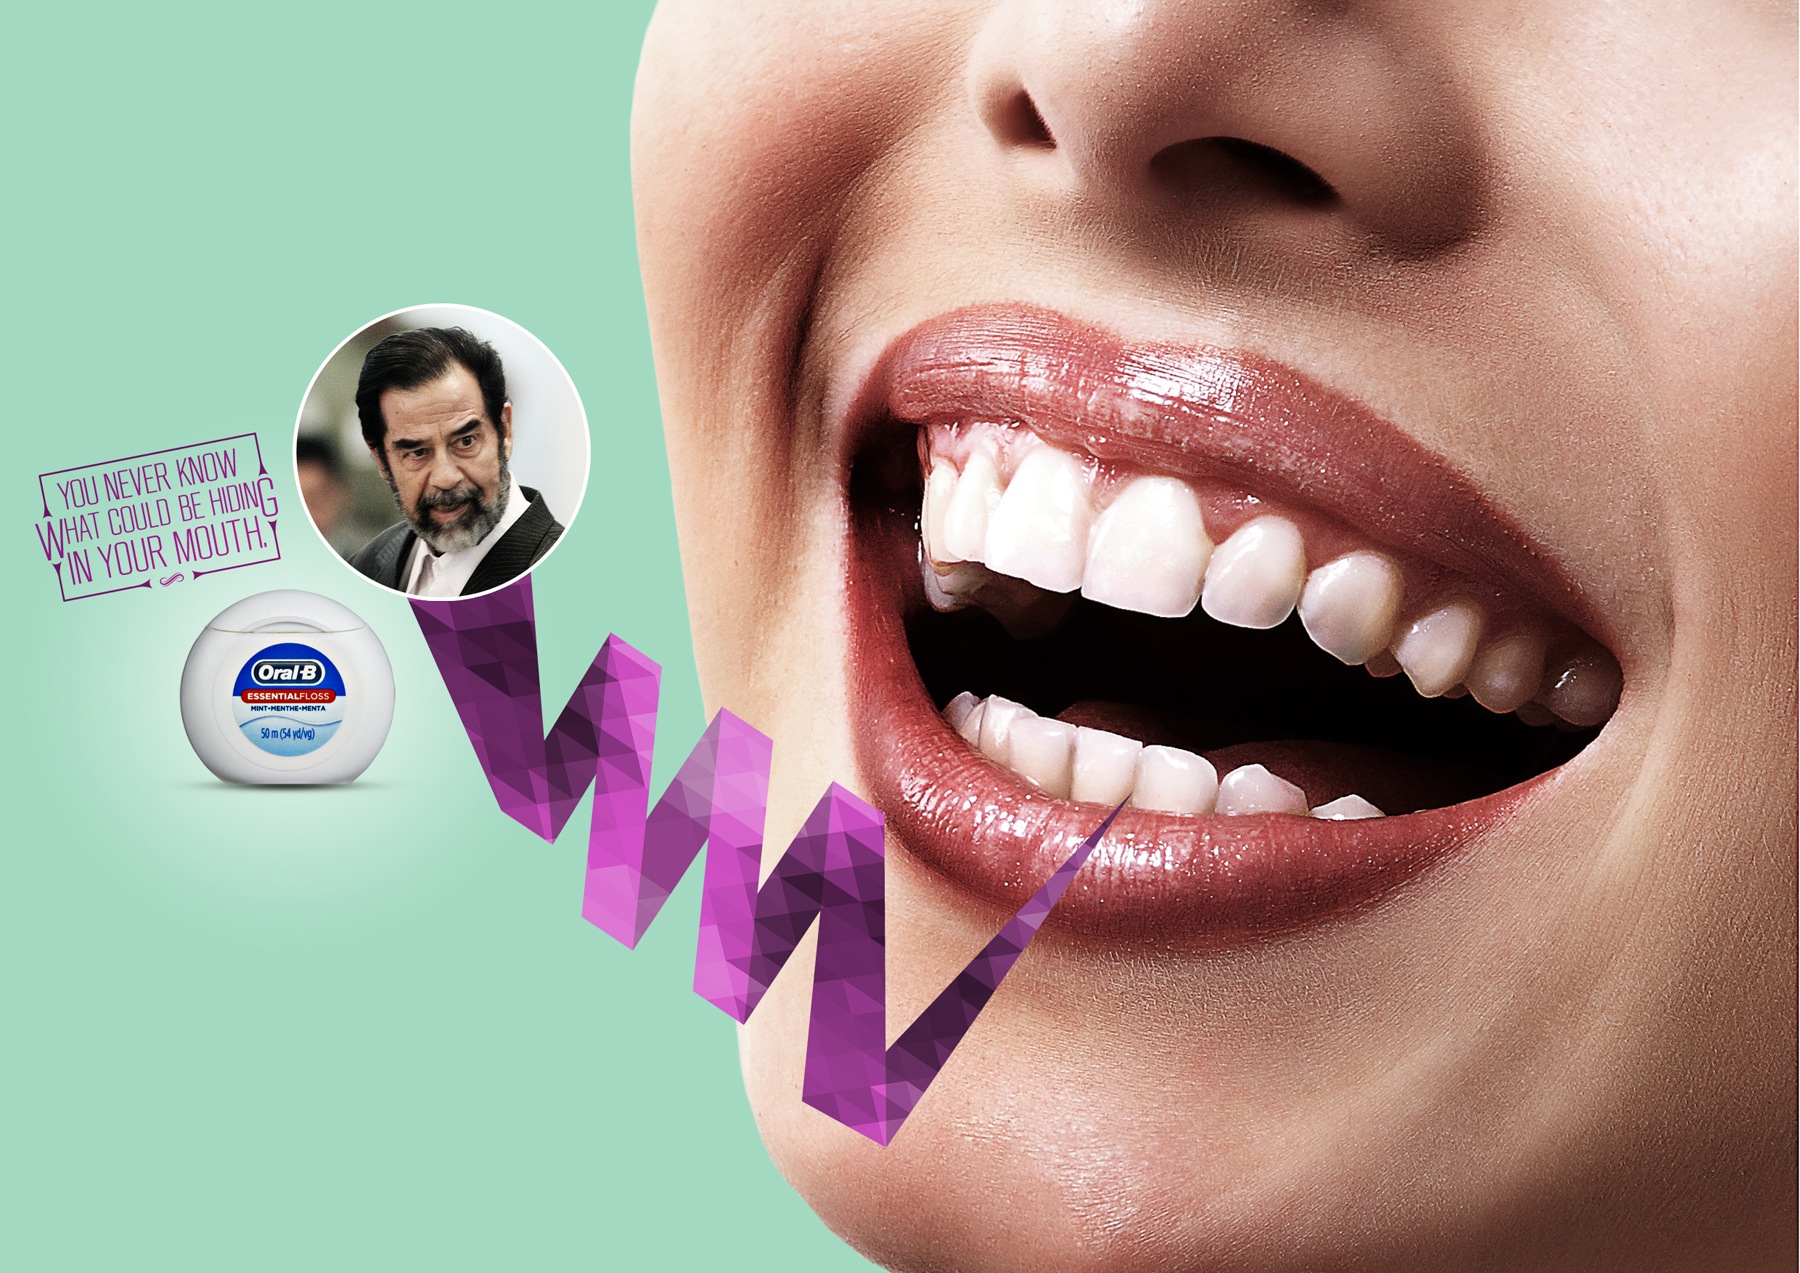 巴西Oral-b健康与美容广告设计